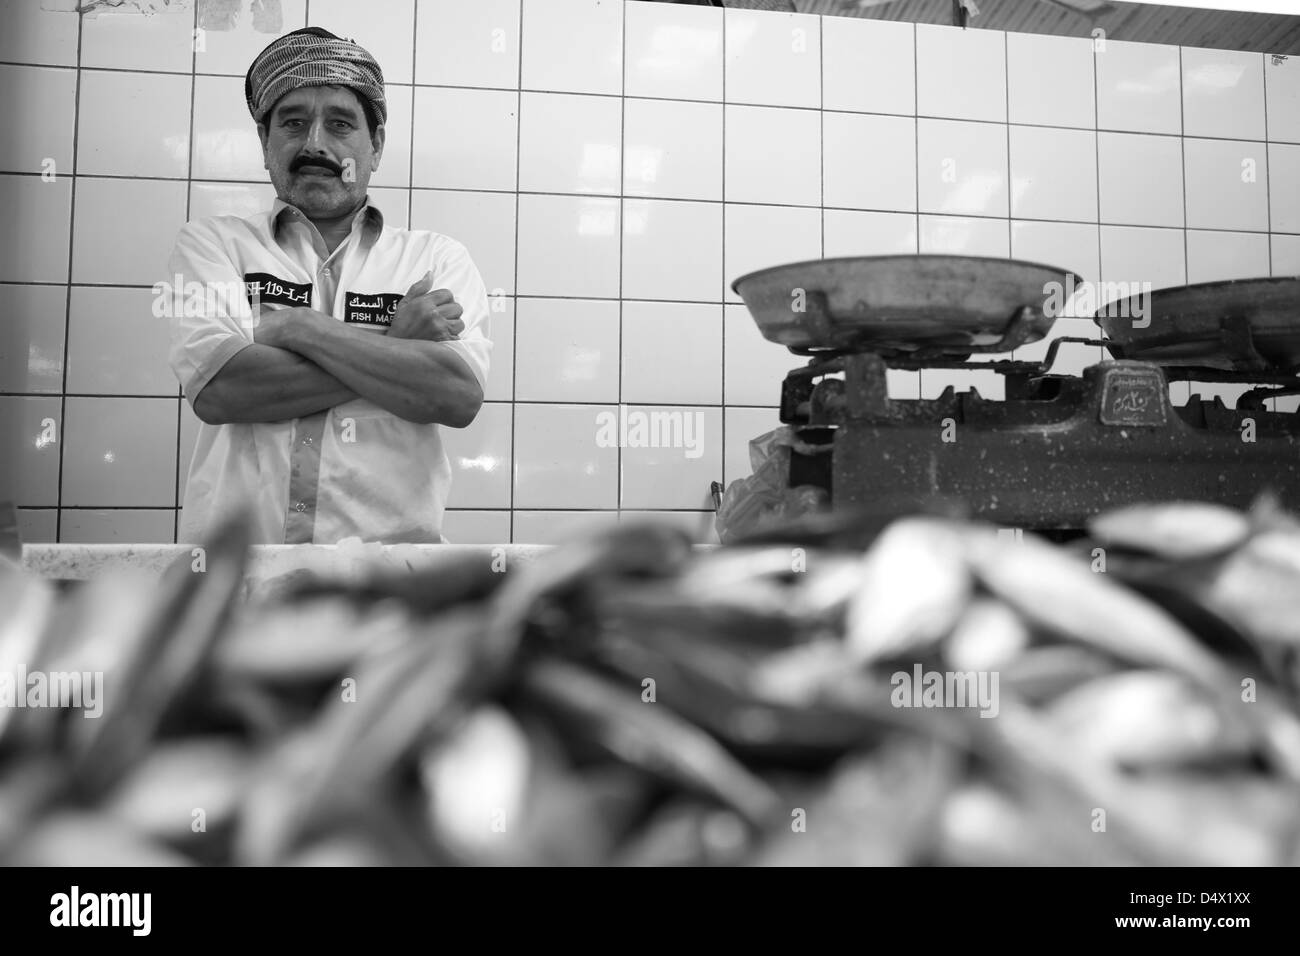 Portrait d'homme au marché aux poissons, Dubai, Émirats Arabes Unis Banque D'Images